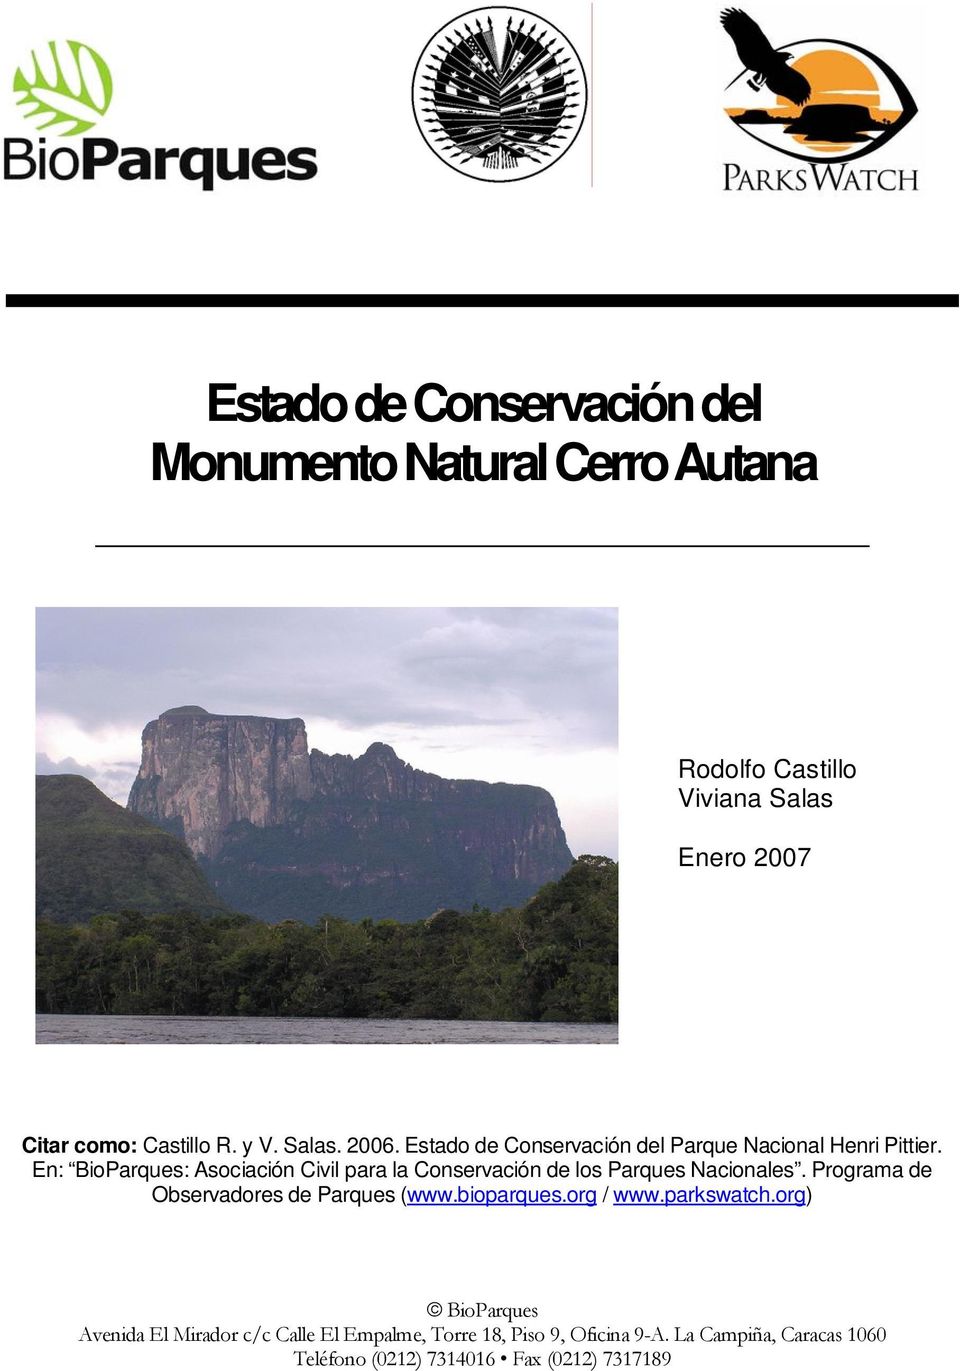 En: BioParques: Asociación Civil para la Conservación de los Parques Nacionales.